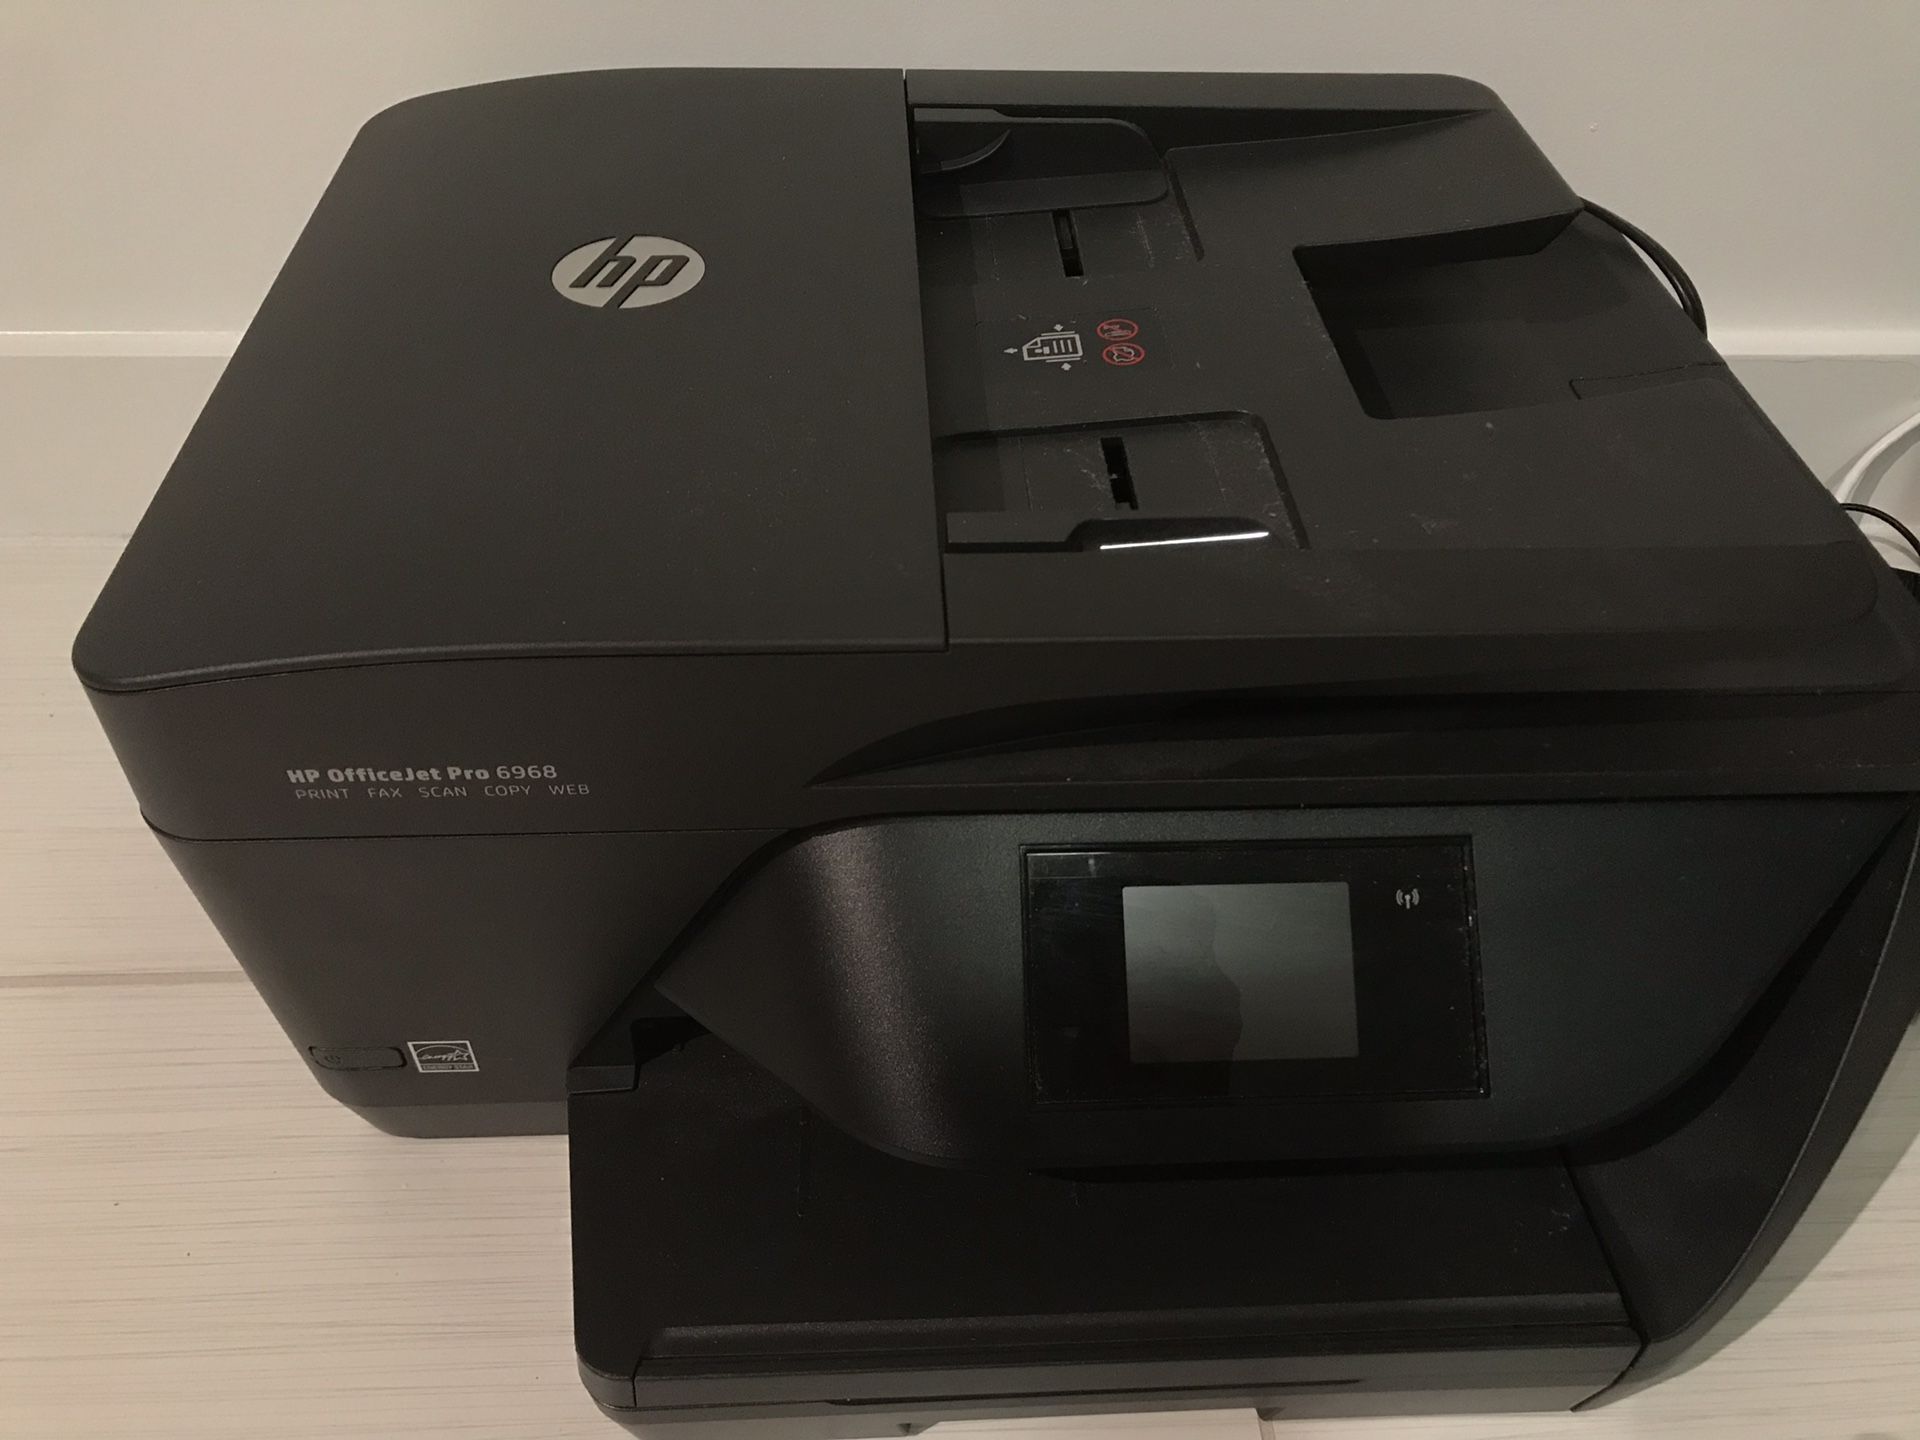 Wireless Printer Fax Scanner Copier — Hp Officejet Pro 6968 For Sale In Miami Fl Offerup 1413